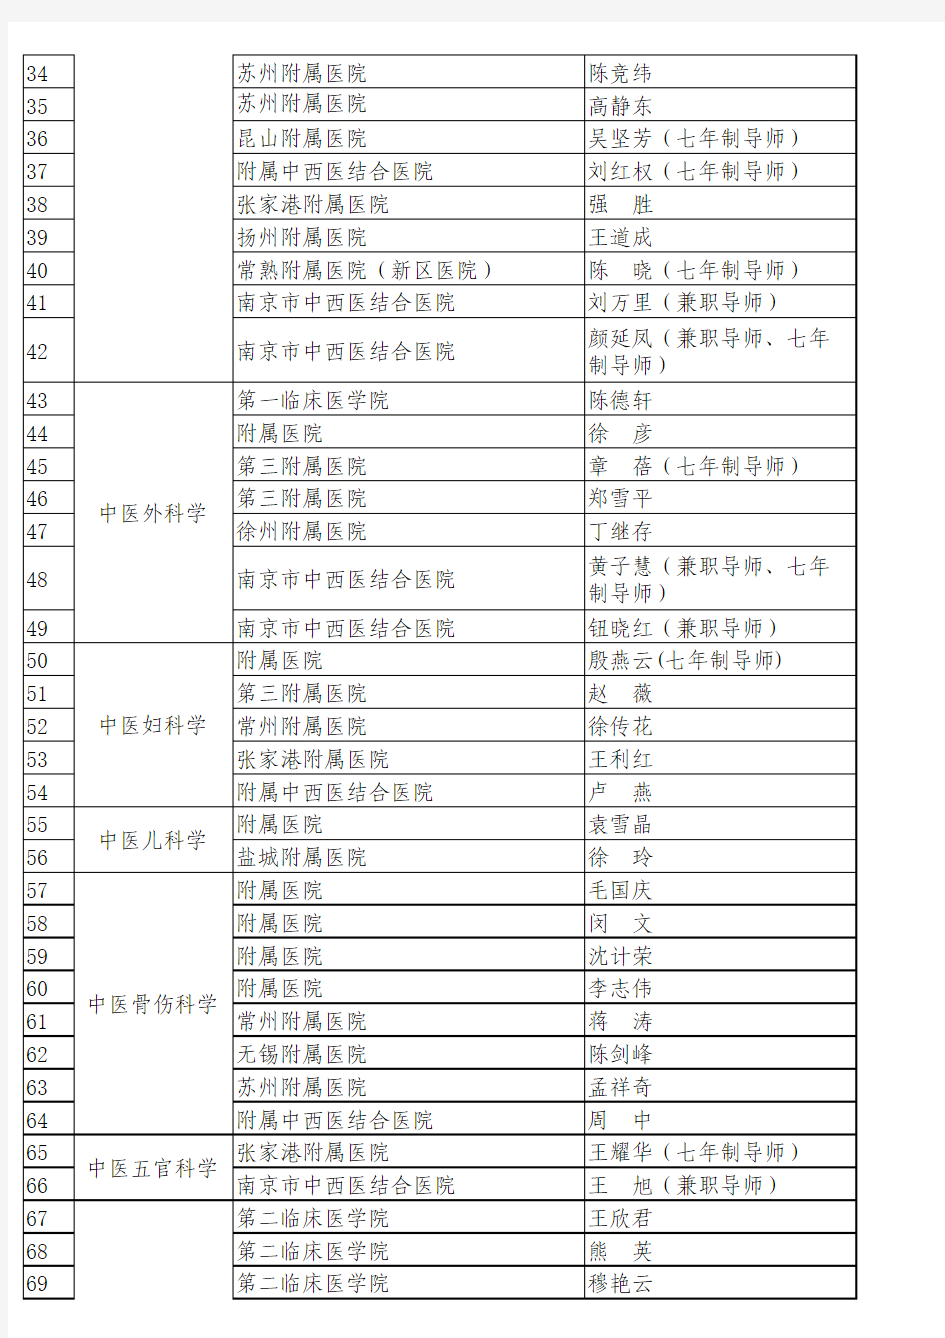 南京中医药大学2013年拟增列硕士研究生指导教师公示名单